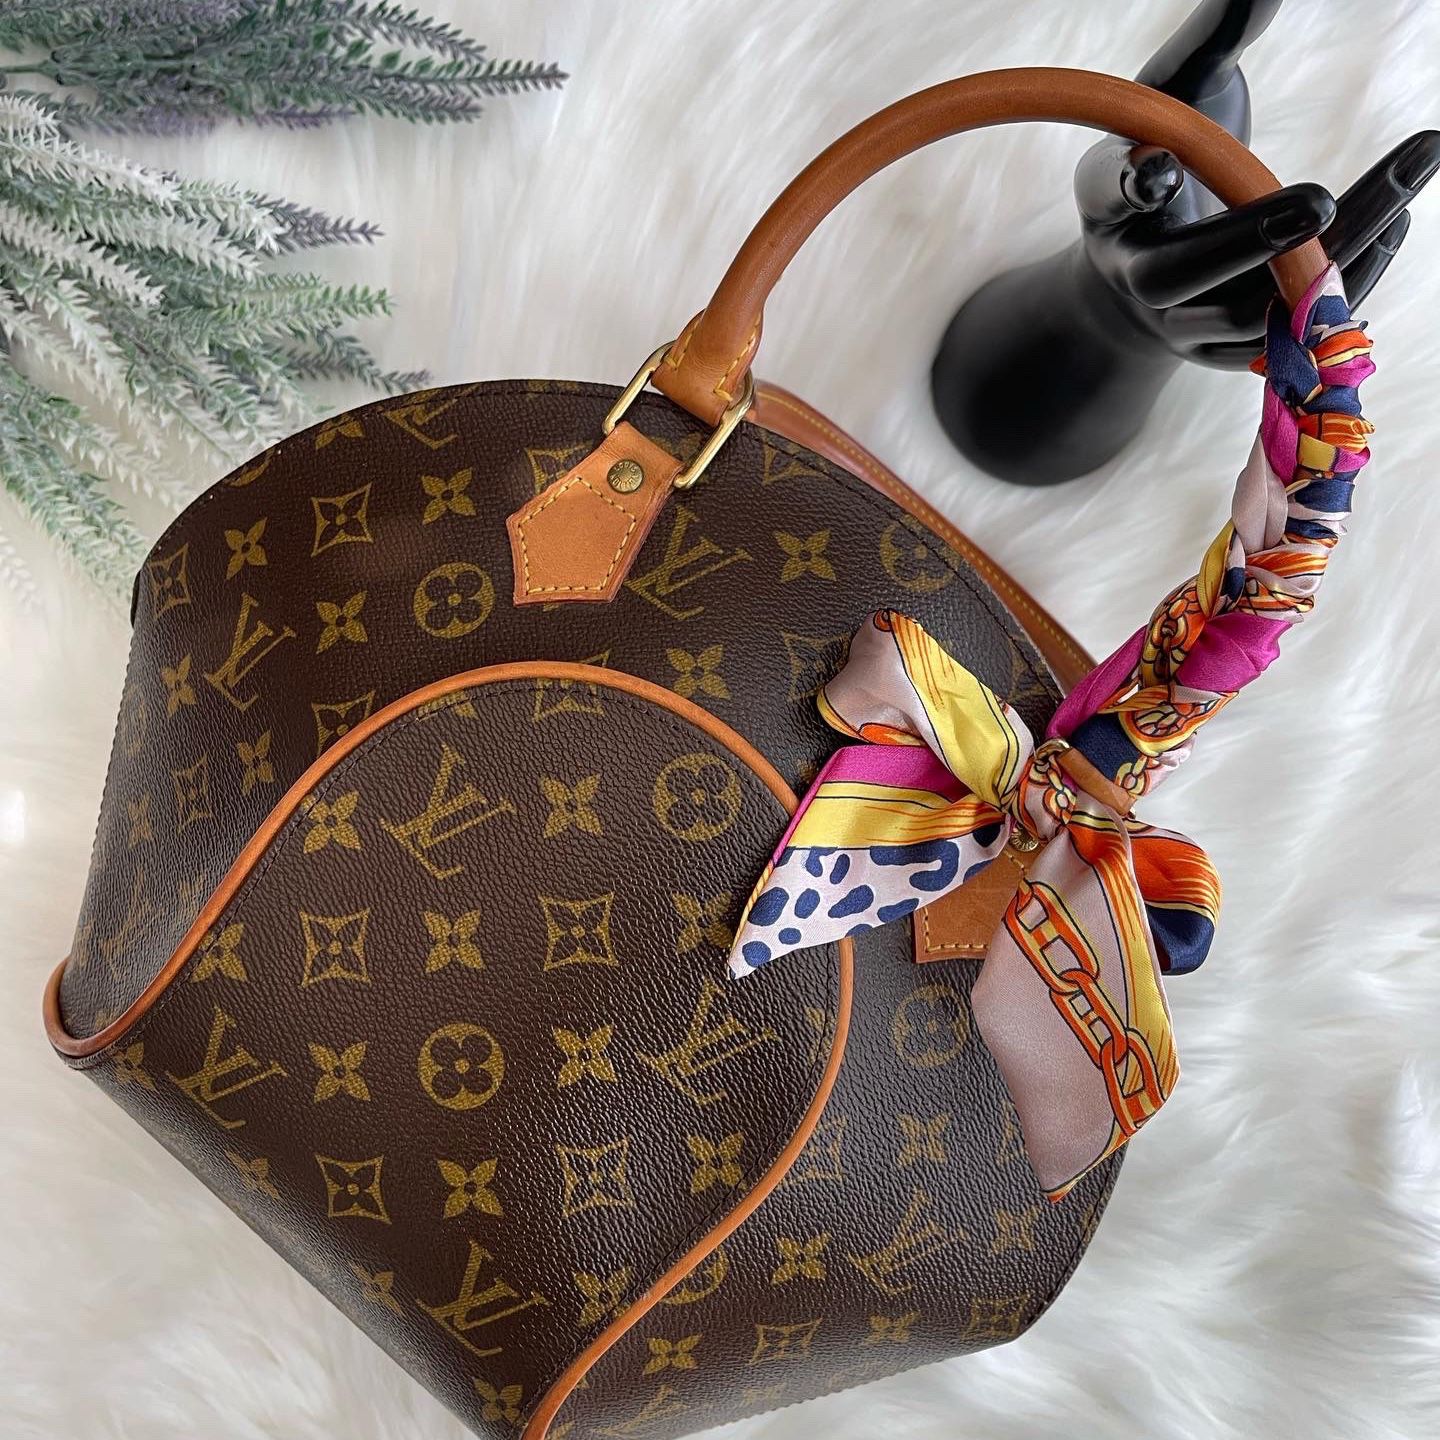 Louis Vuitton Ellipse PM - Good or Bag